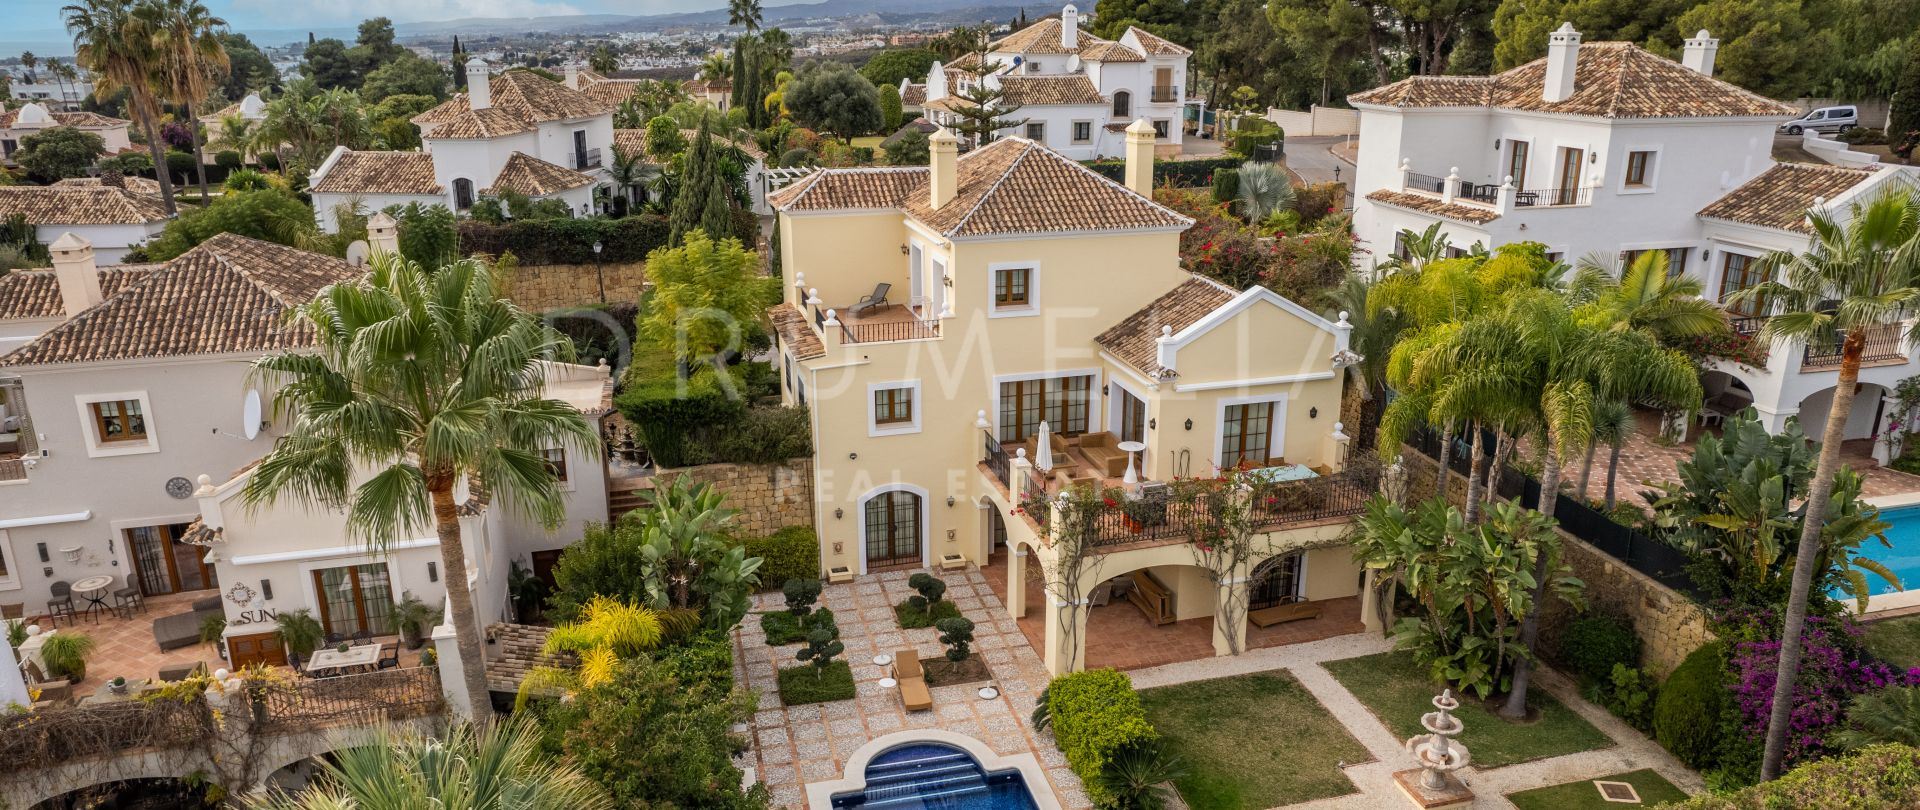 Utsökt villa med panoramautsikt över havet i bästa läge, El Paraiso Medio